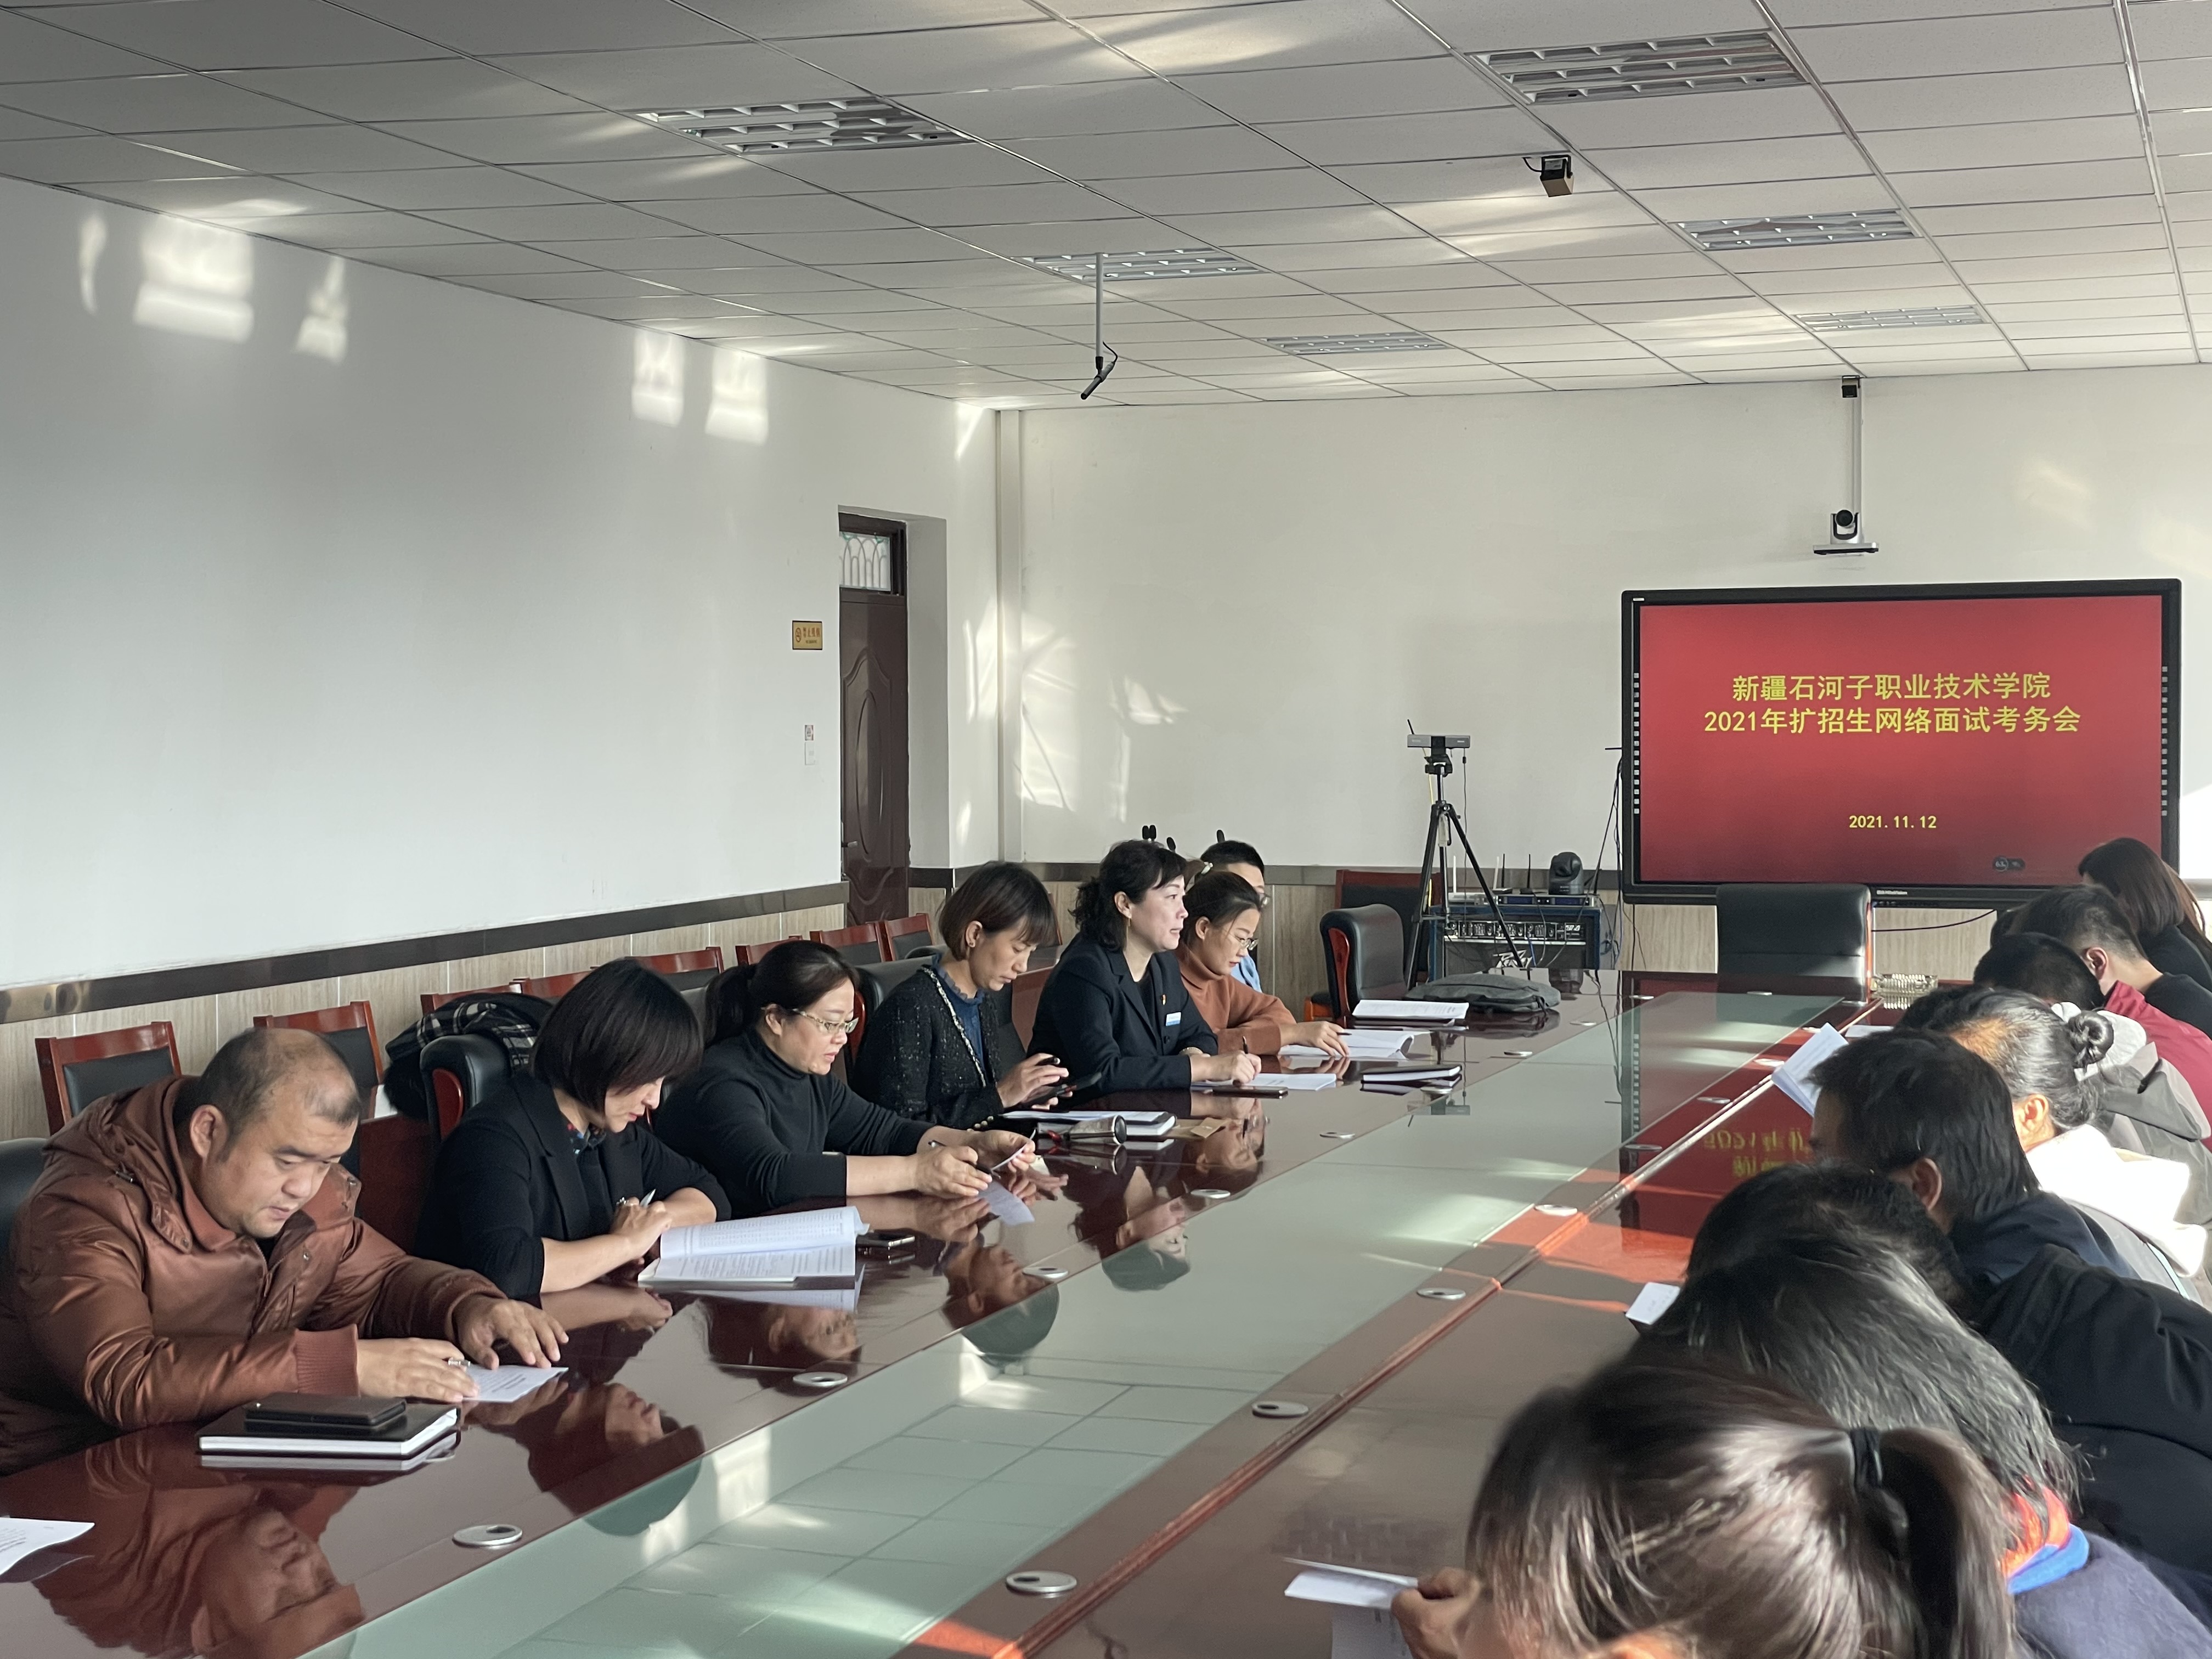 新疆石河子职业技术学院 2021年高职扩招网络面试工作圆满结束